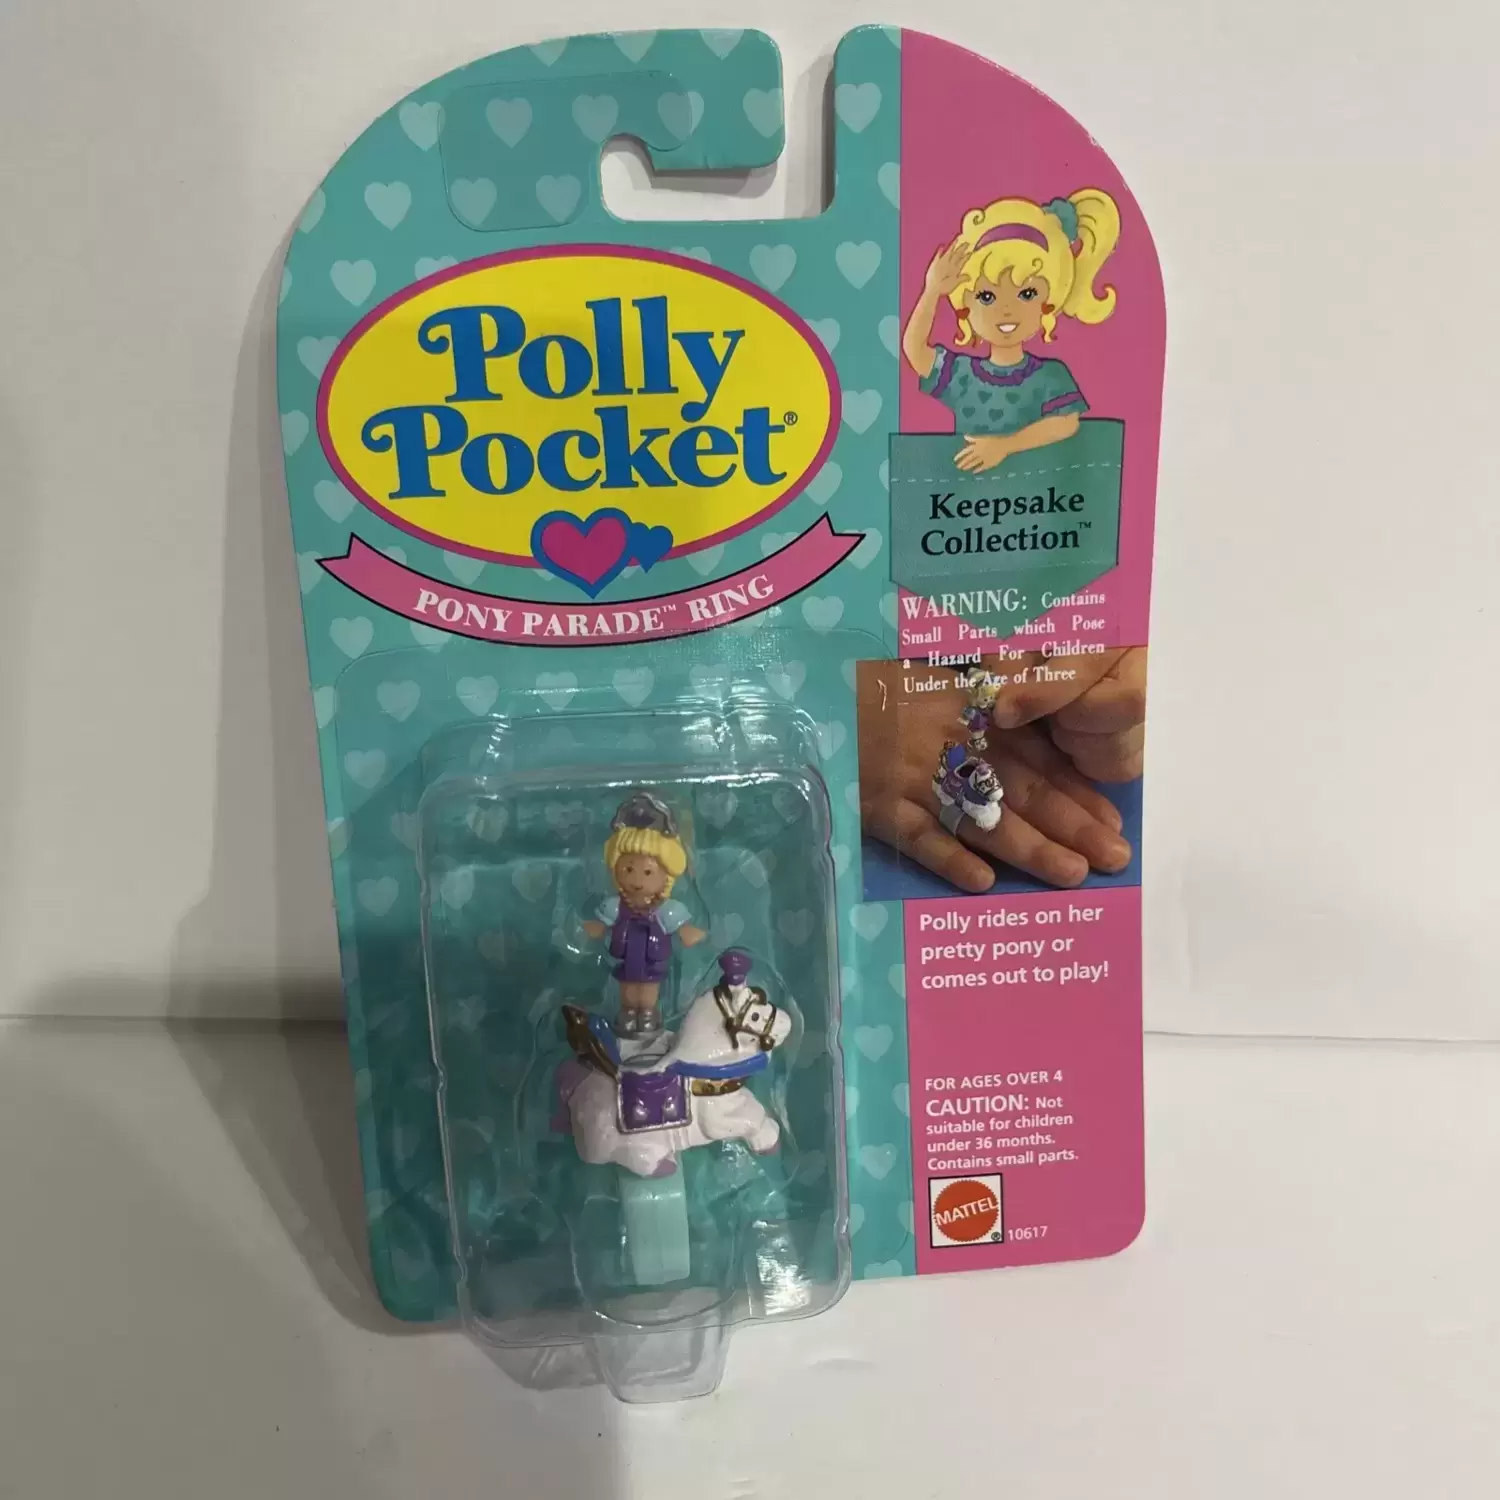 Polly Pocket Bluebird (vintage) - Pony Parade Ring